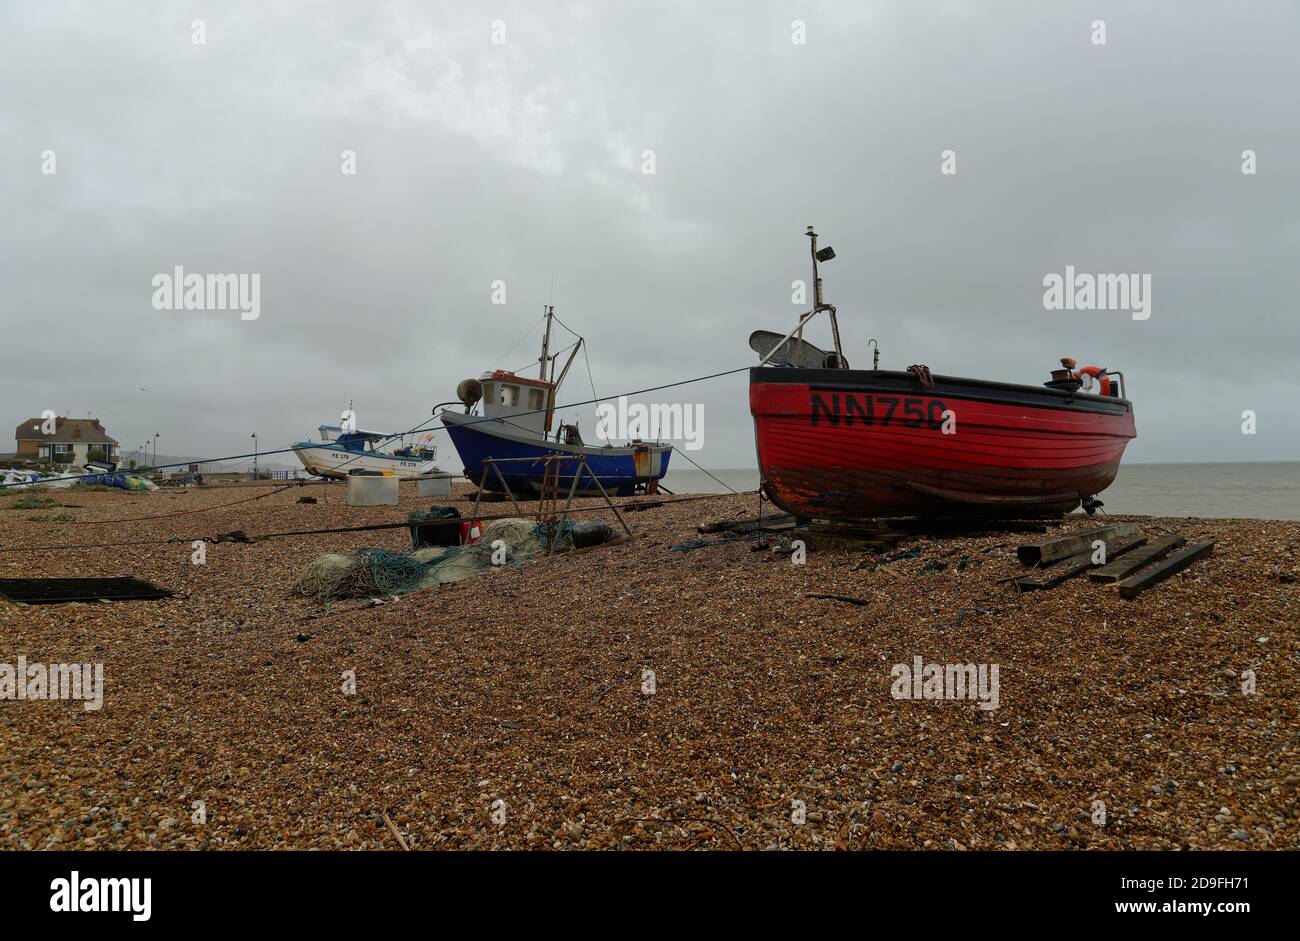 Bateau de pêche rouge sur une plage près de Hythe dans le Kent, Angleterre, Royaume-Uni. Banque D'Images